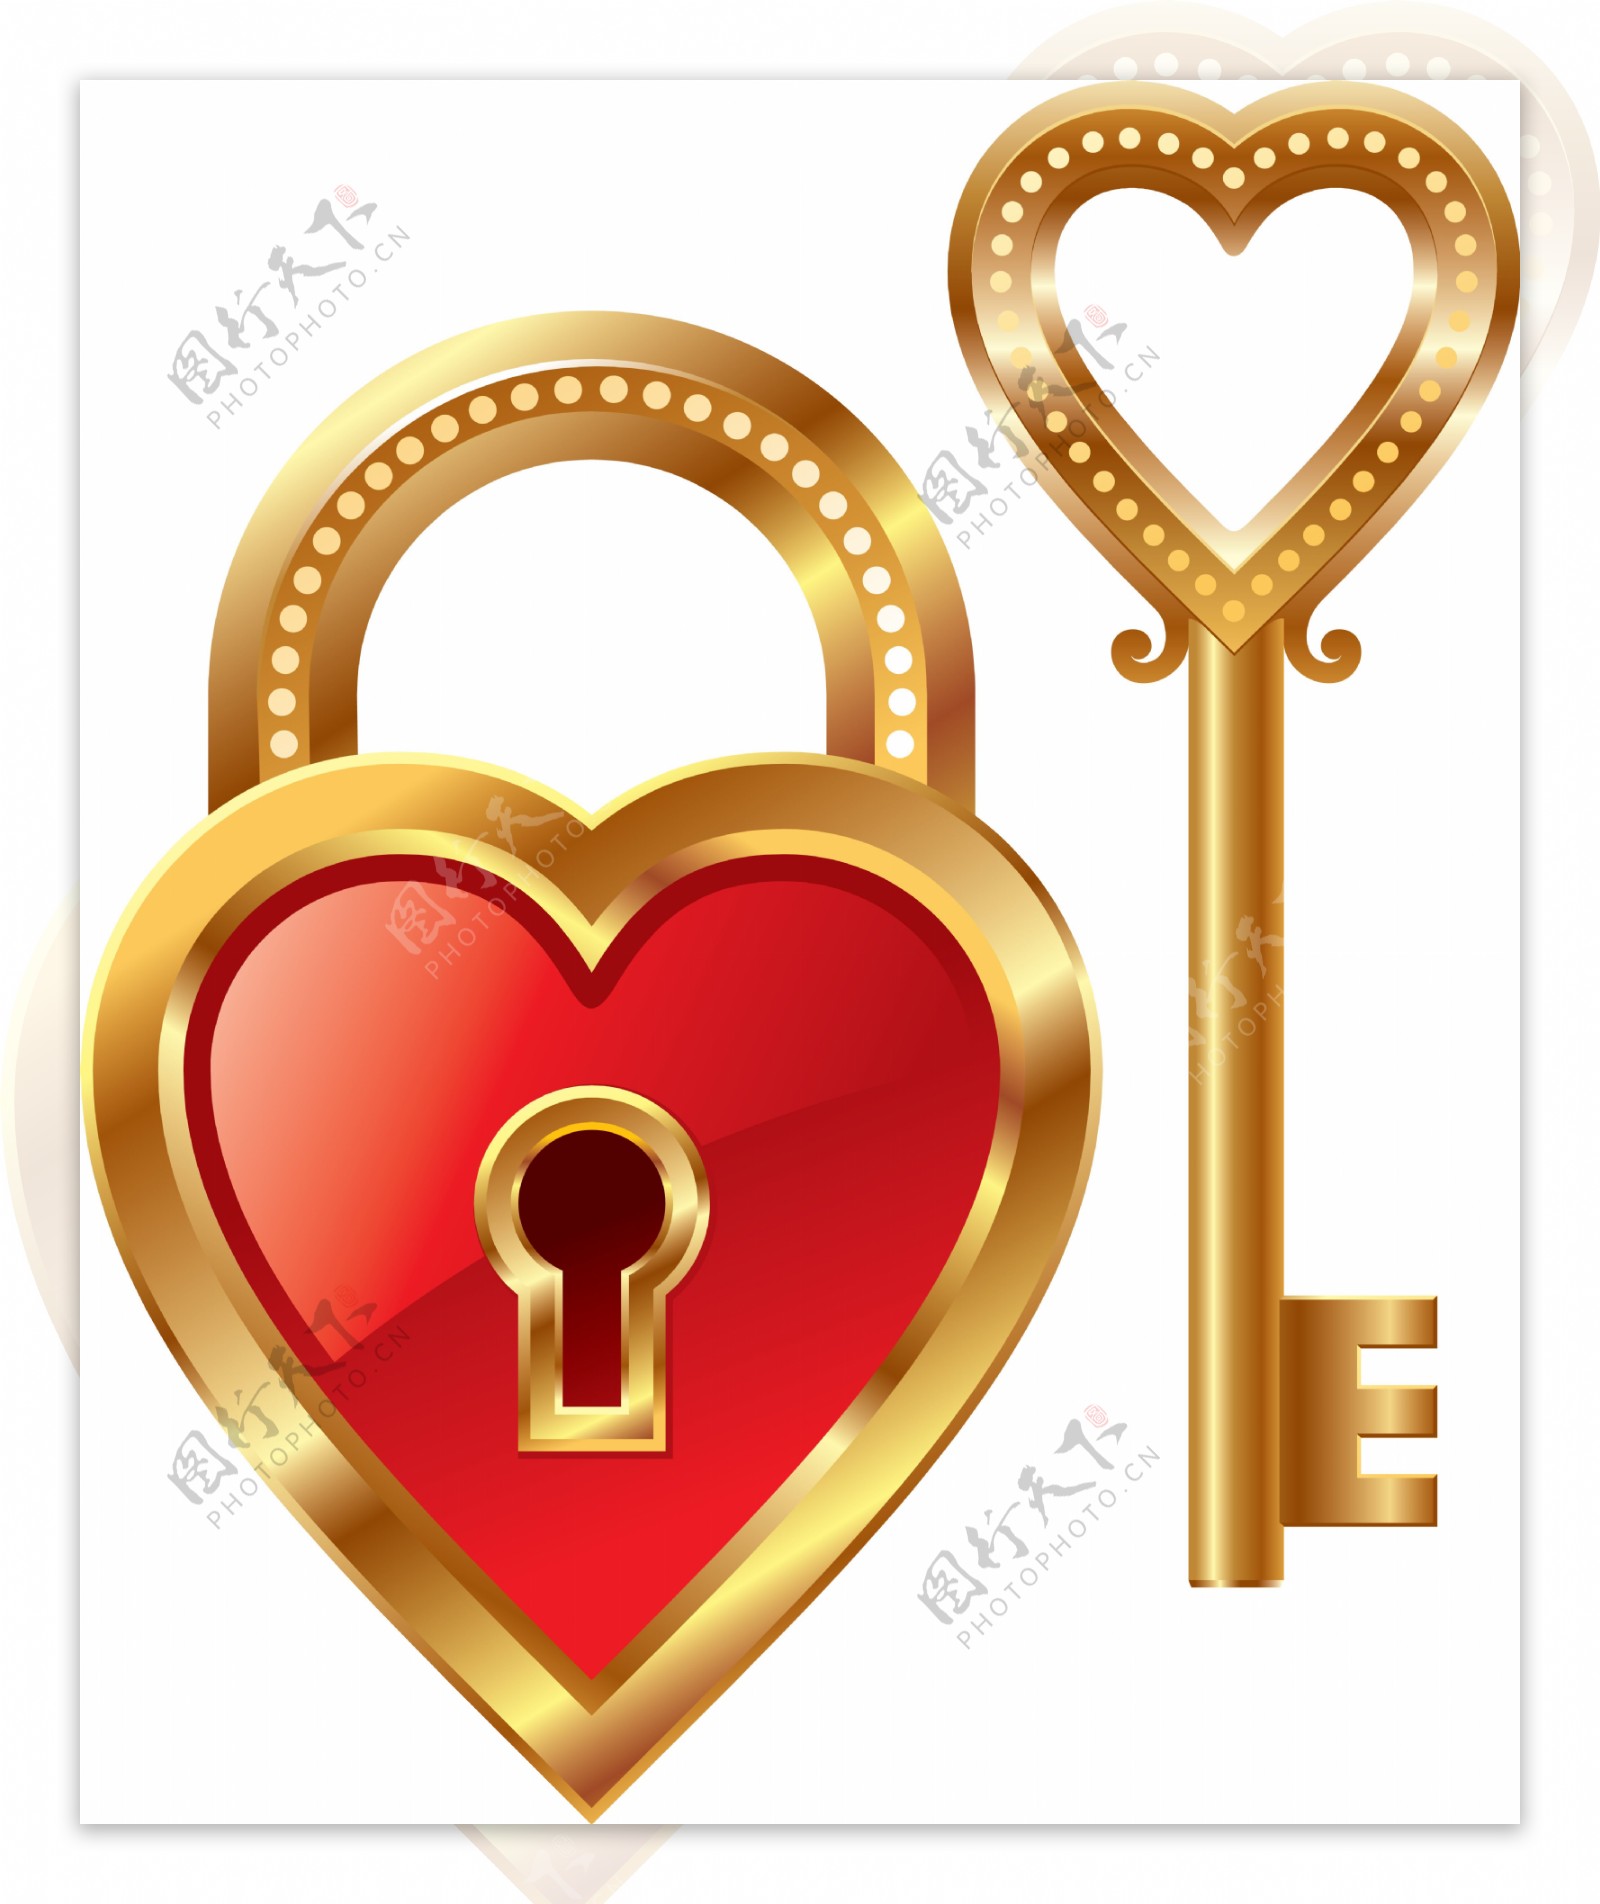 金黄色心形锁头和钥匙图片